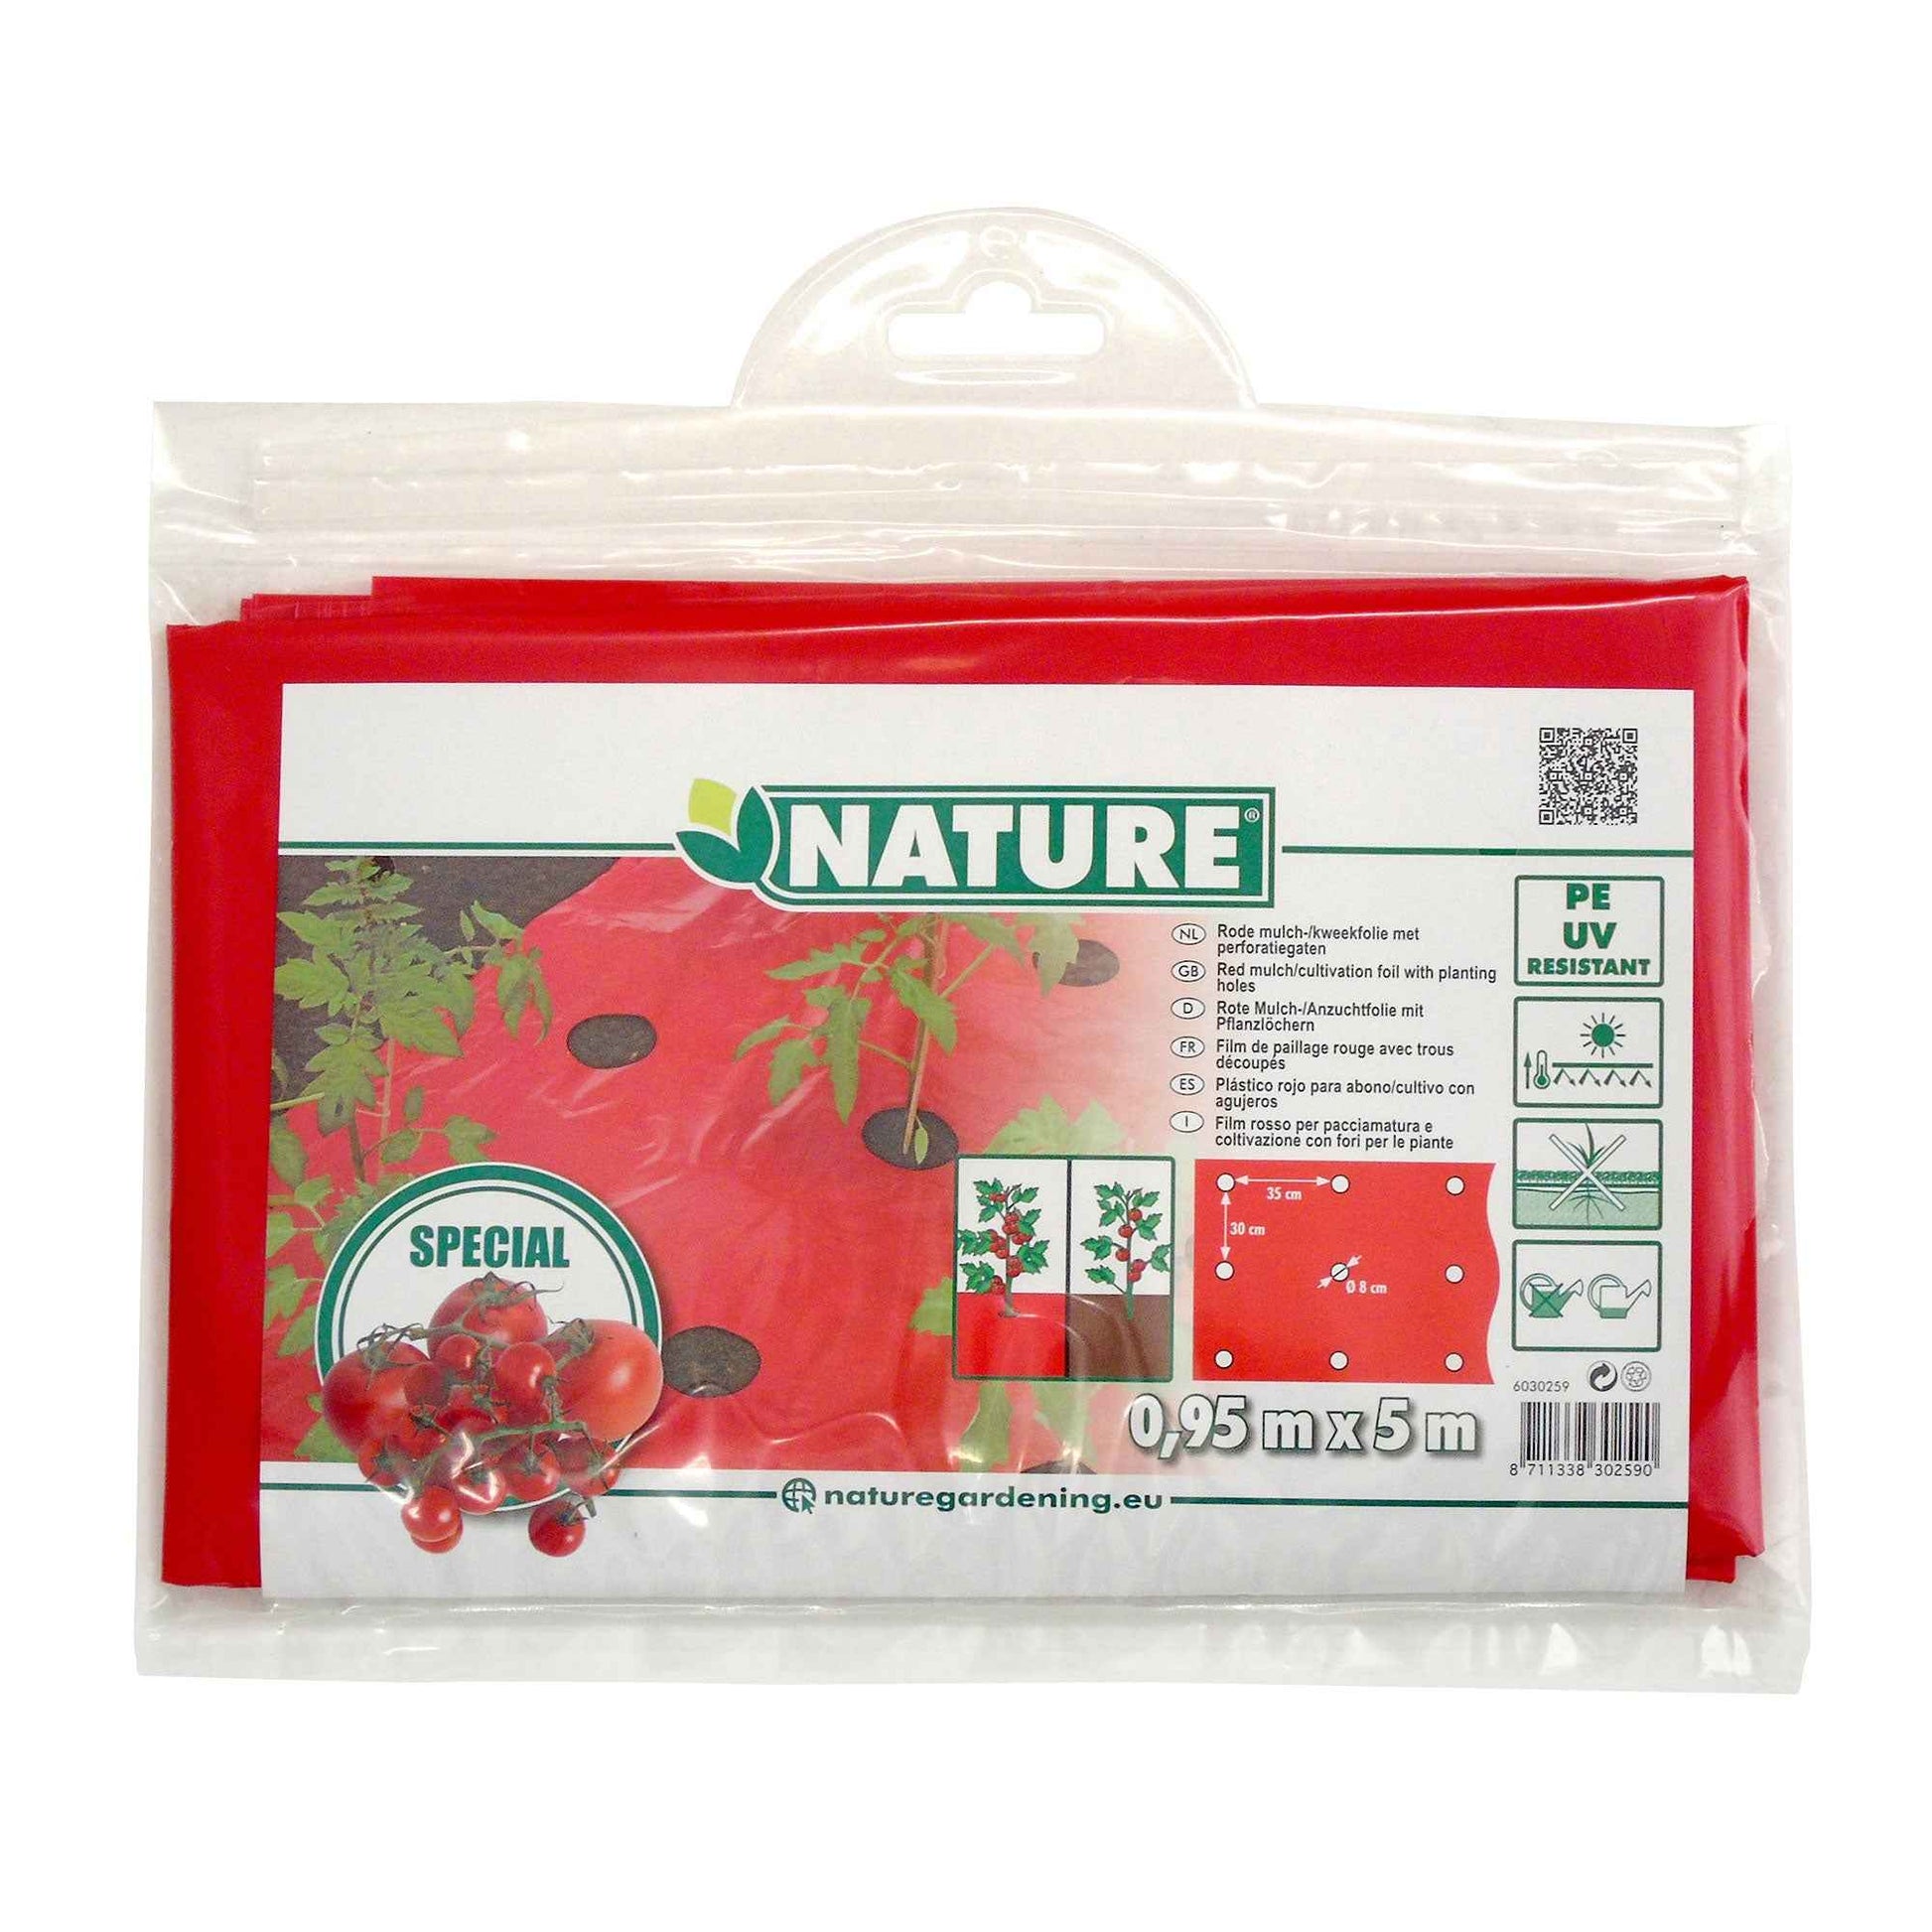 Nature Film de paillage pour tomates - Matériel de culture